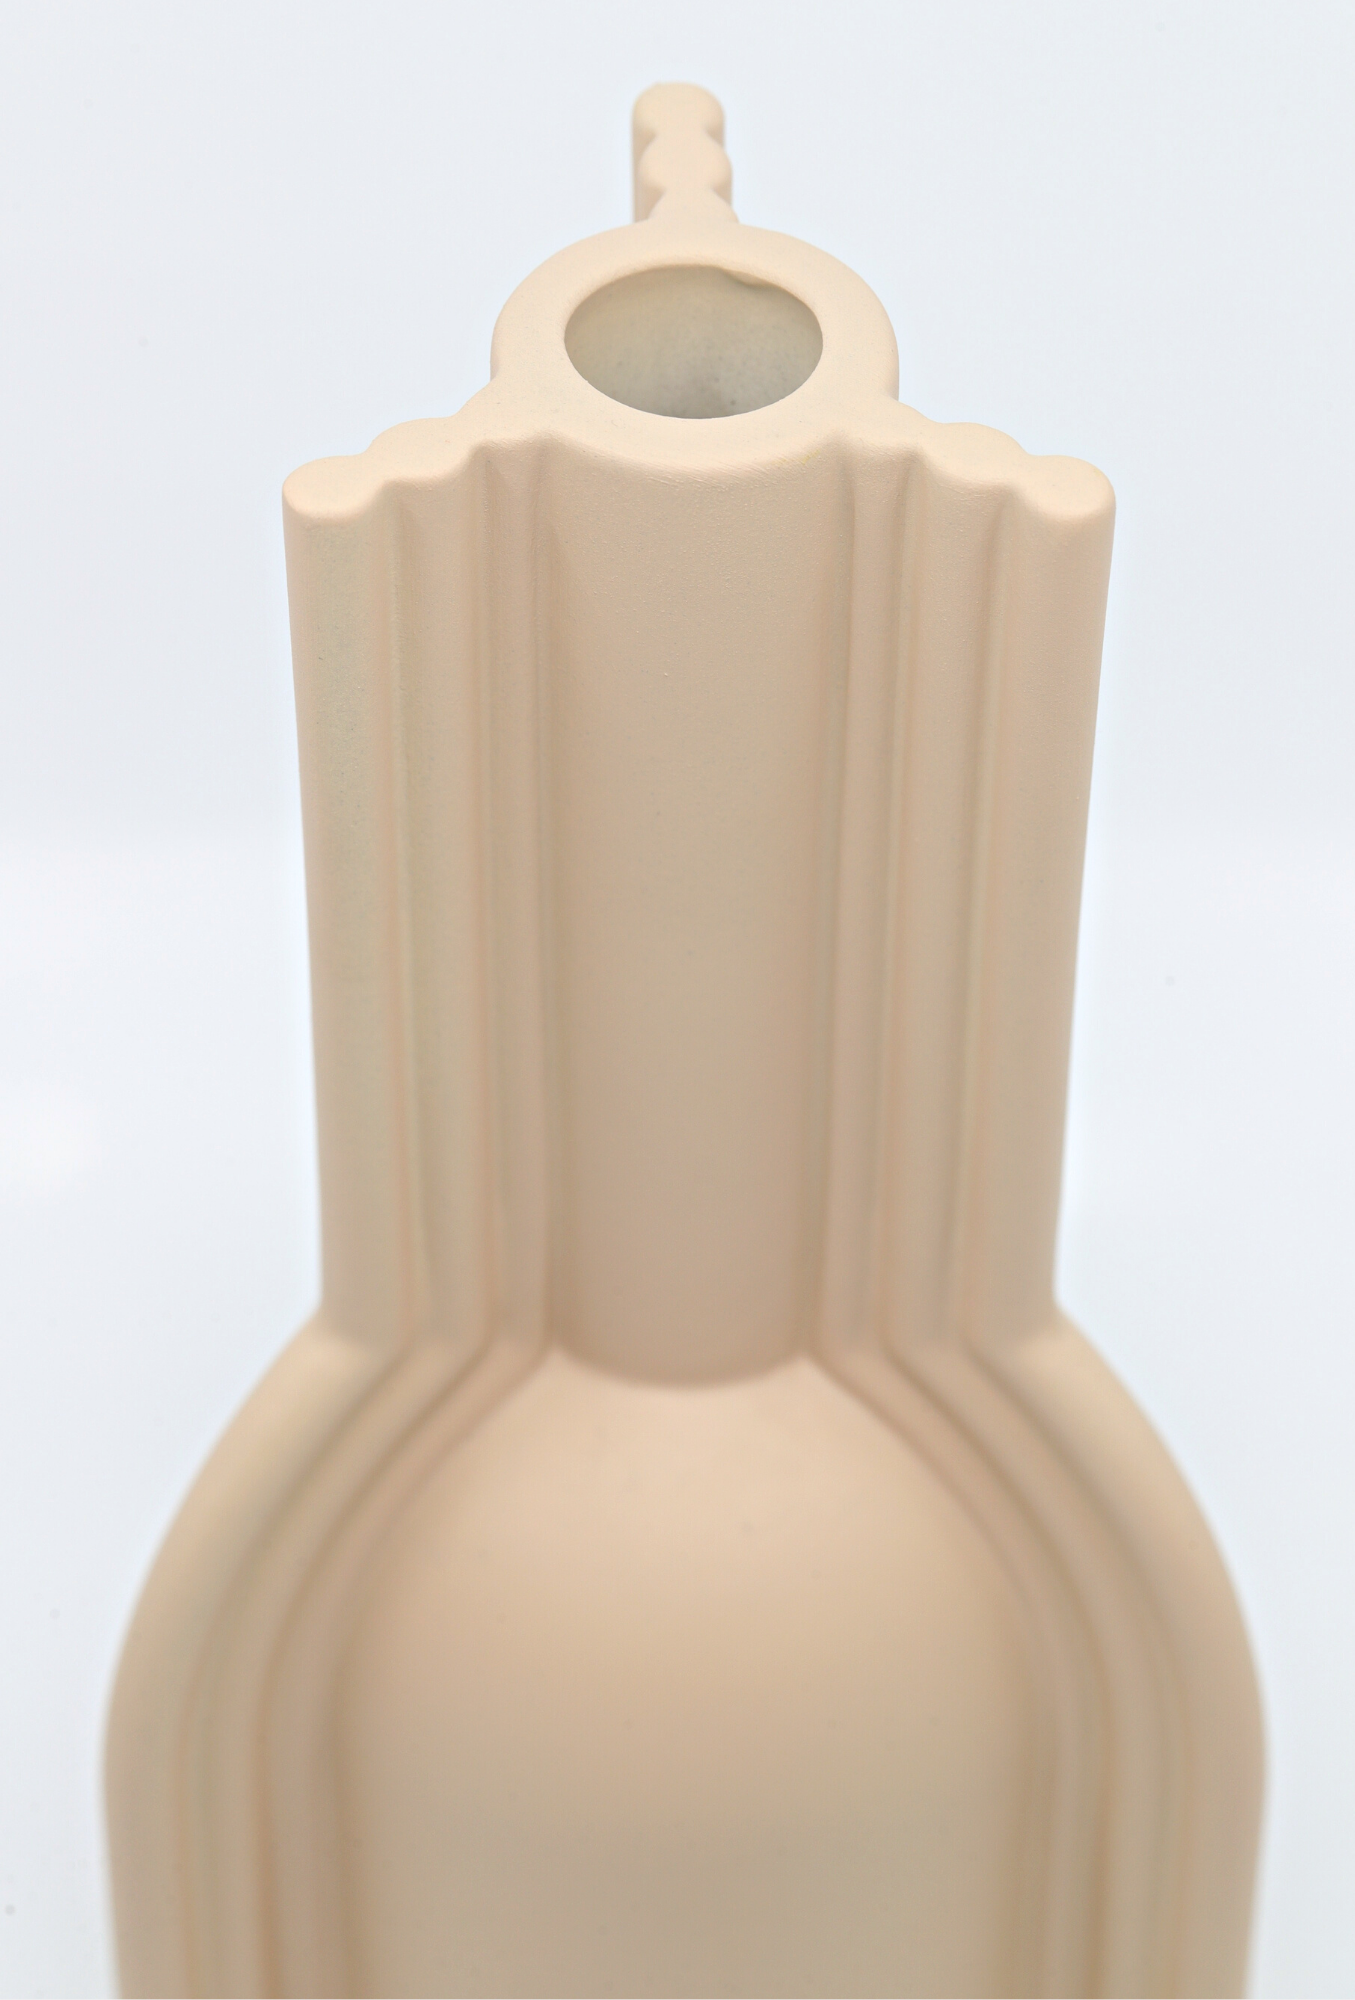 Ceramic Vase | Beige Art-Deco